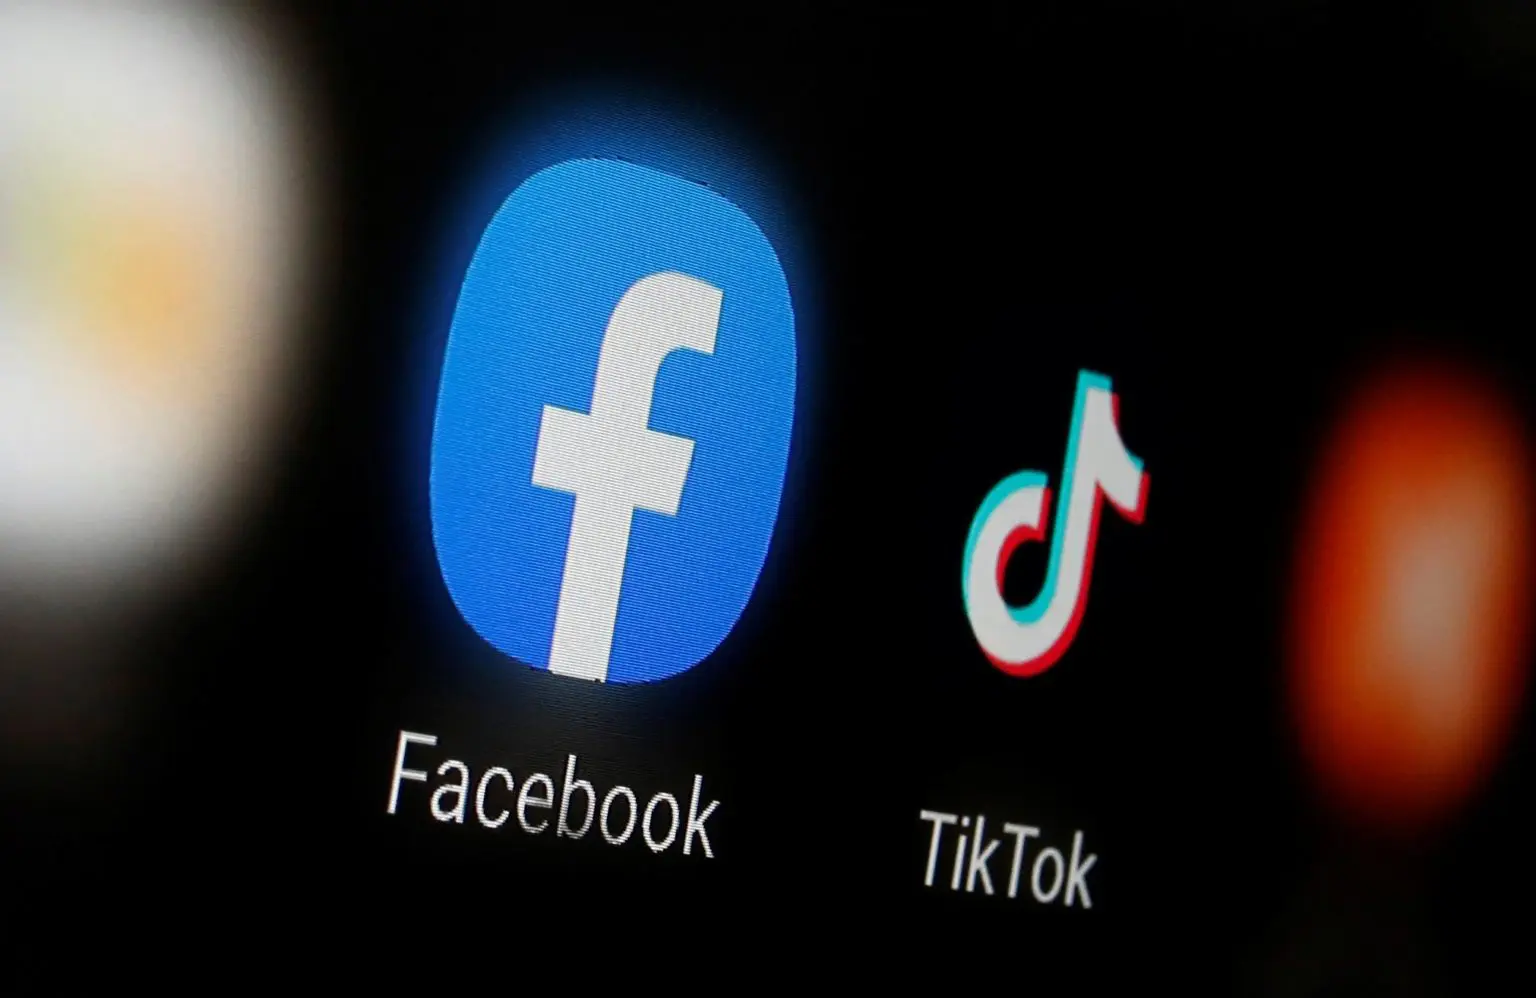 فيسبوك تختبر فيديوهات على غرار تيك توك في تطبيقها الرئيسي